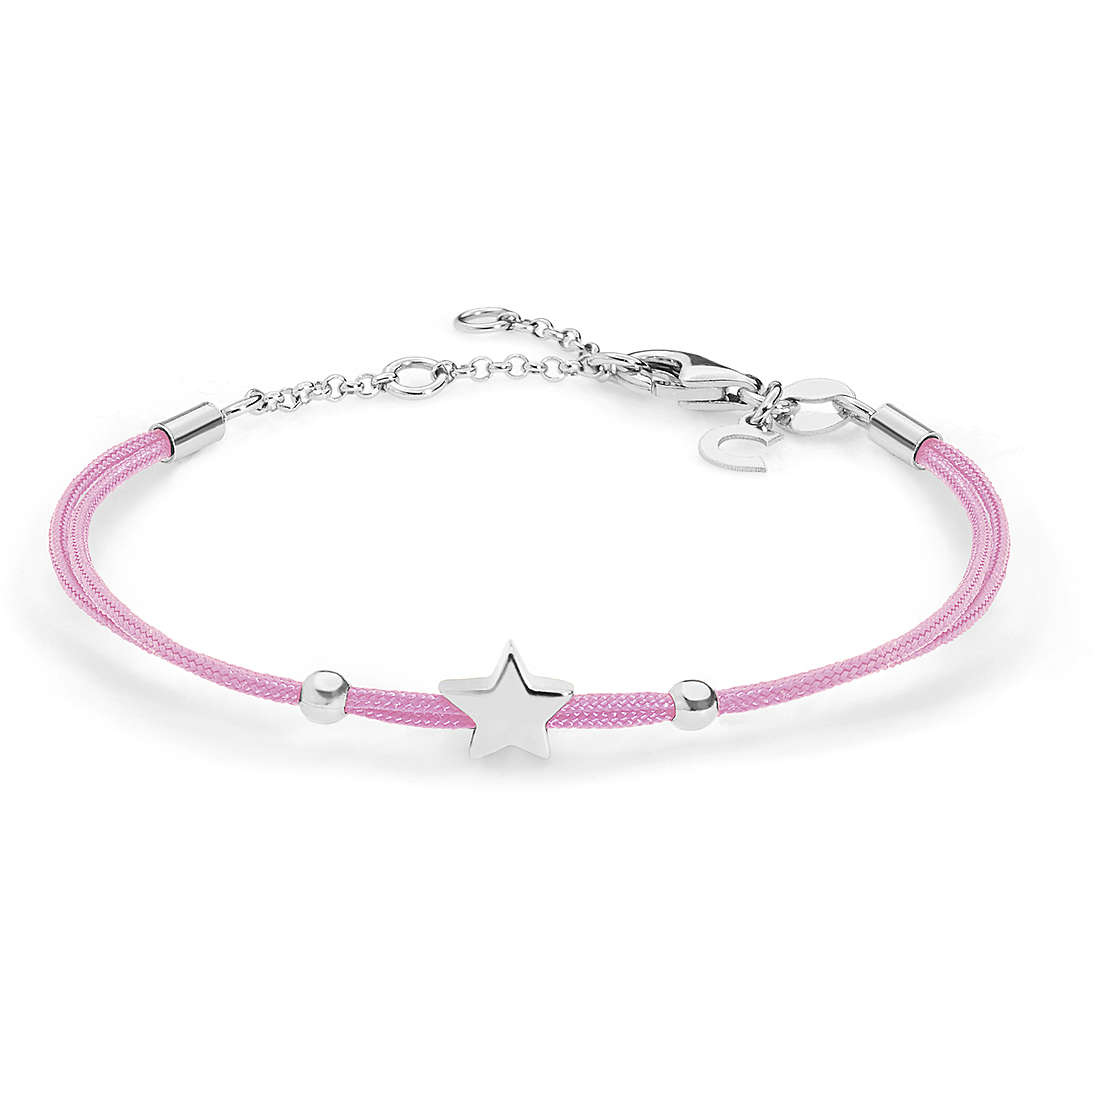 bracelet woman jewellery Comete Stella BRA 161